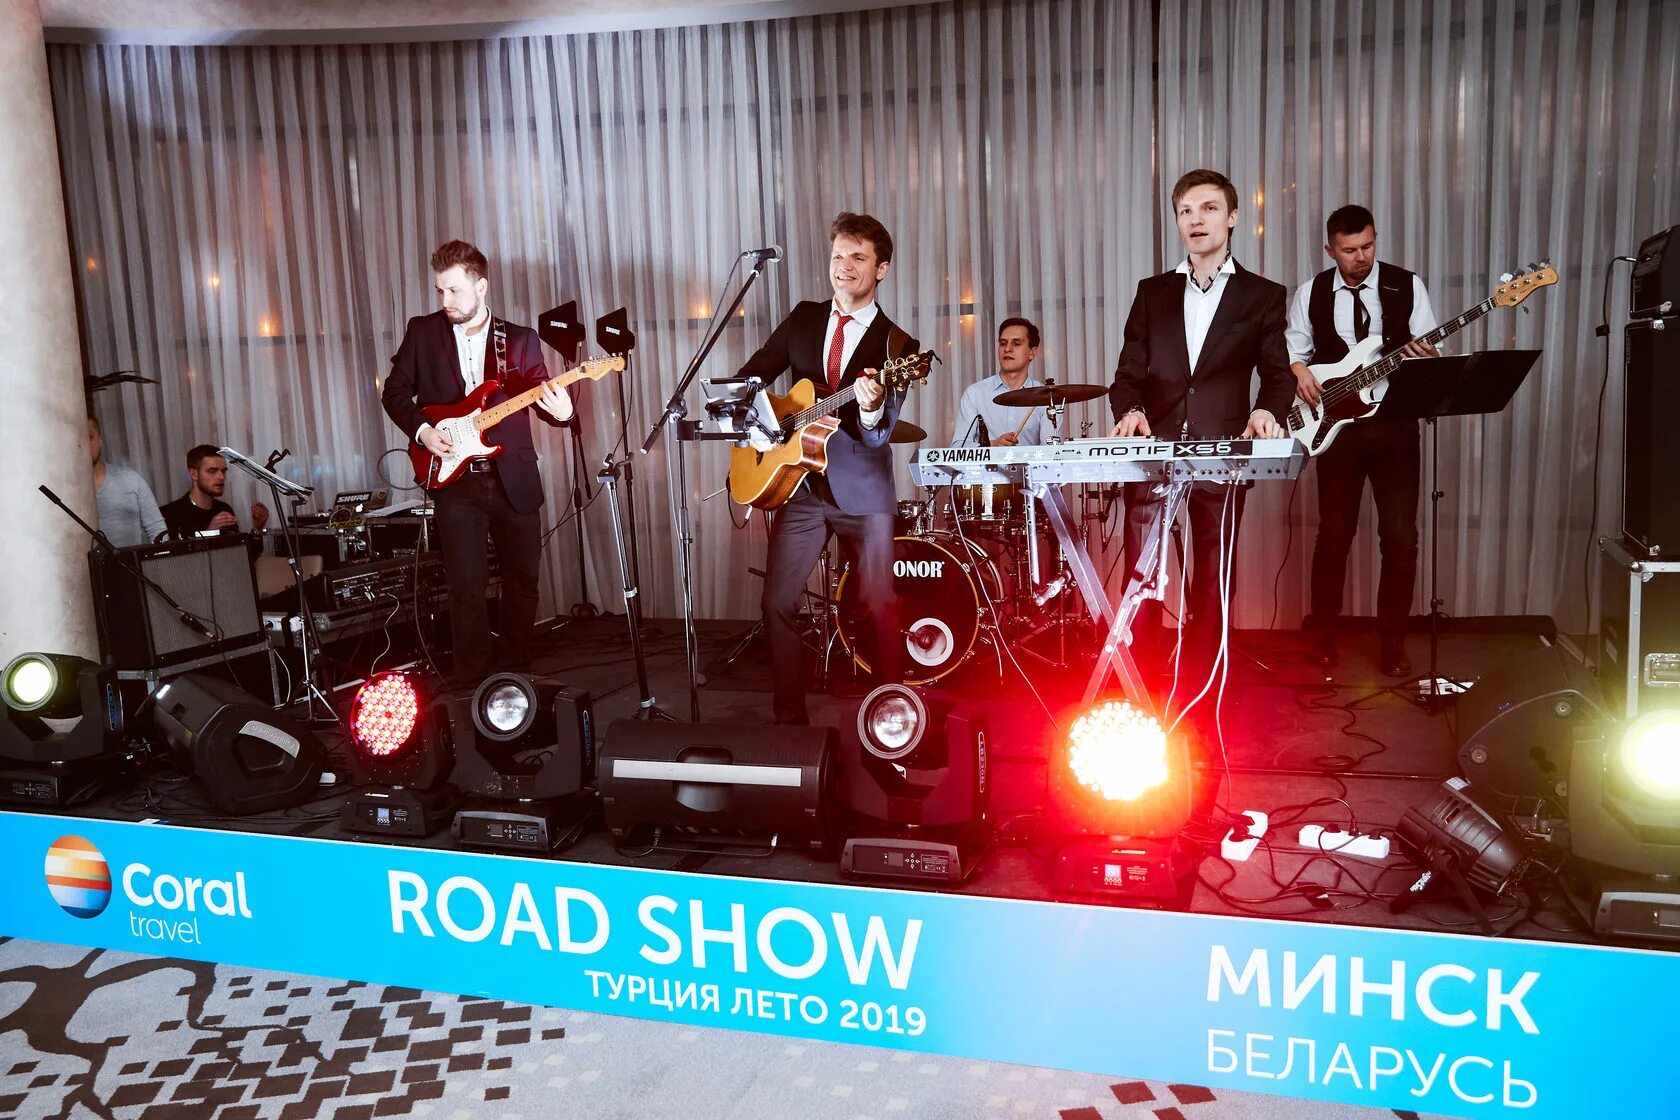 Road show в Турции. Музыкальный Road show. Road show Turkey Анекс. Роад шоу с турецкими отелями.